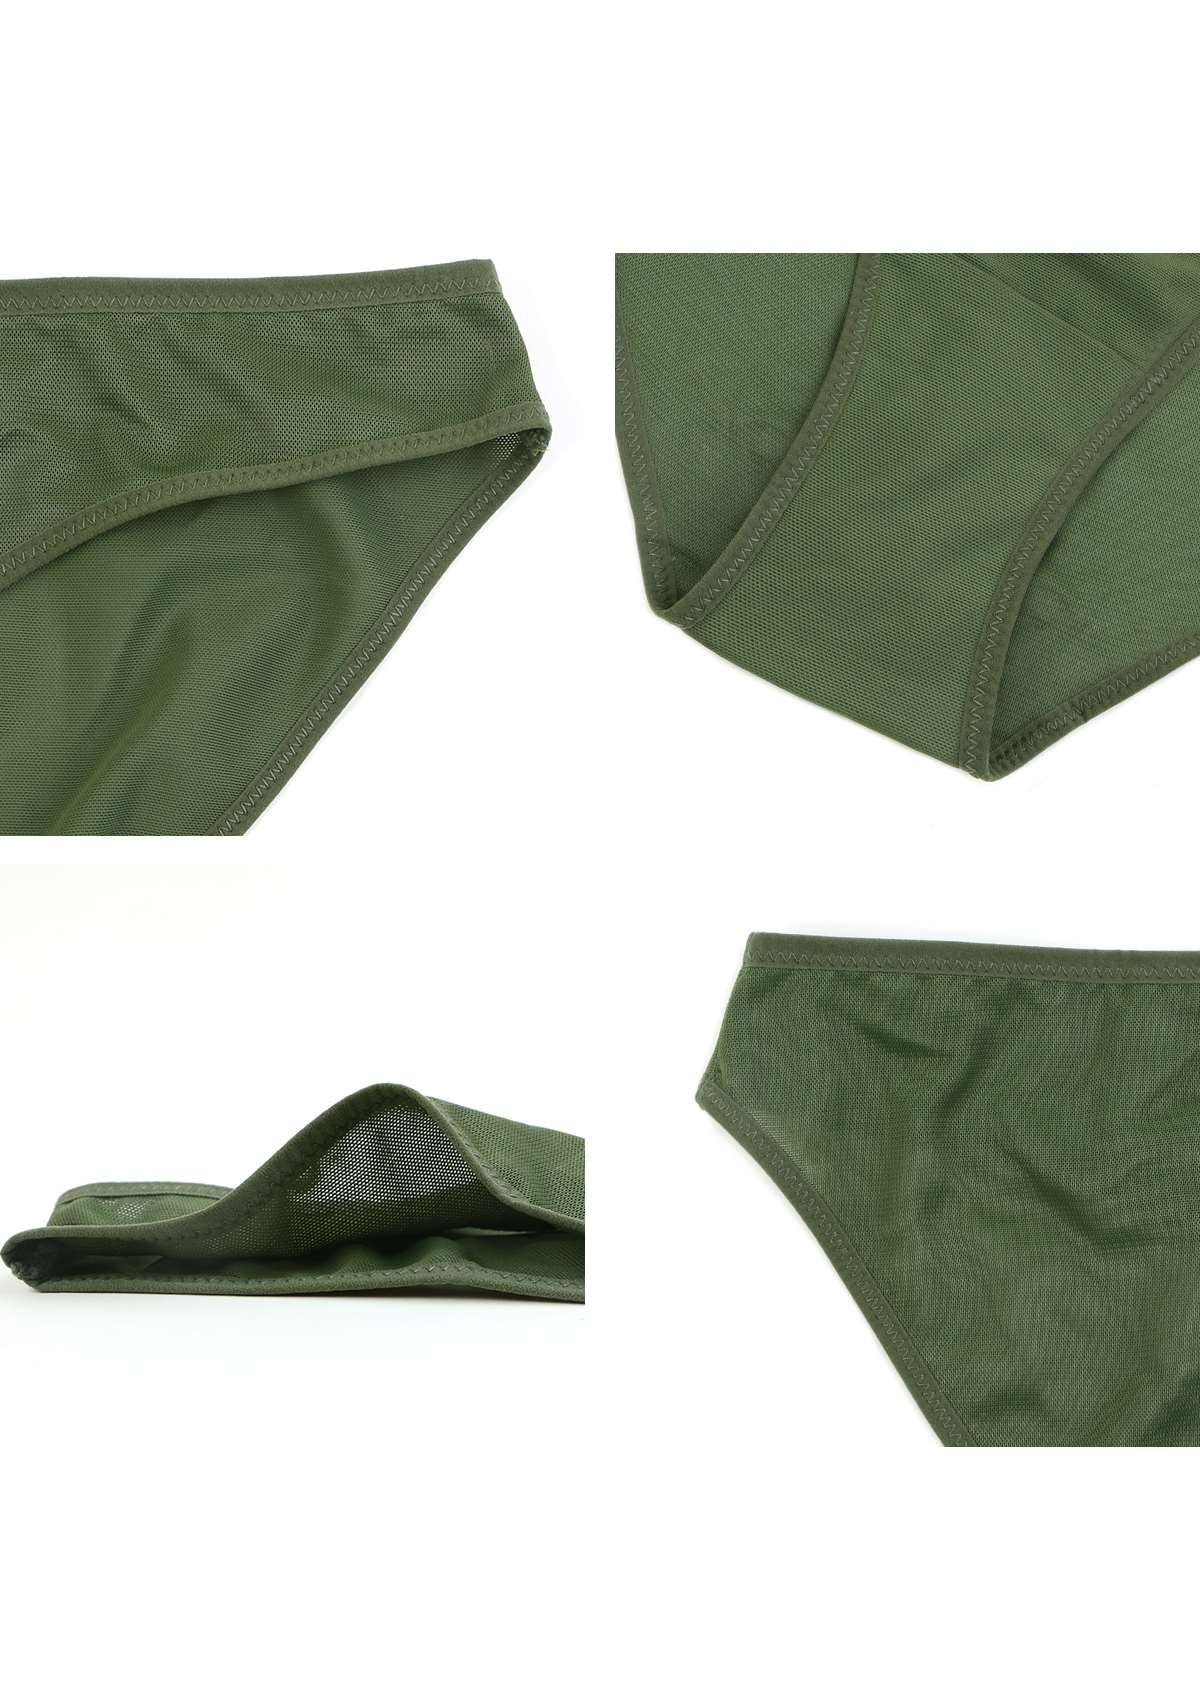 HSIA Billie Smooth Sheer Mesh Lightweight Soft Comfy Bikini Underwear - S / Dark Green